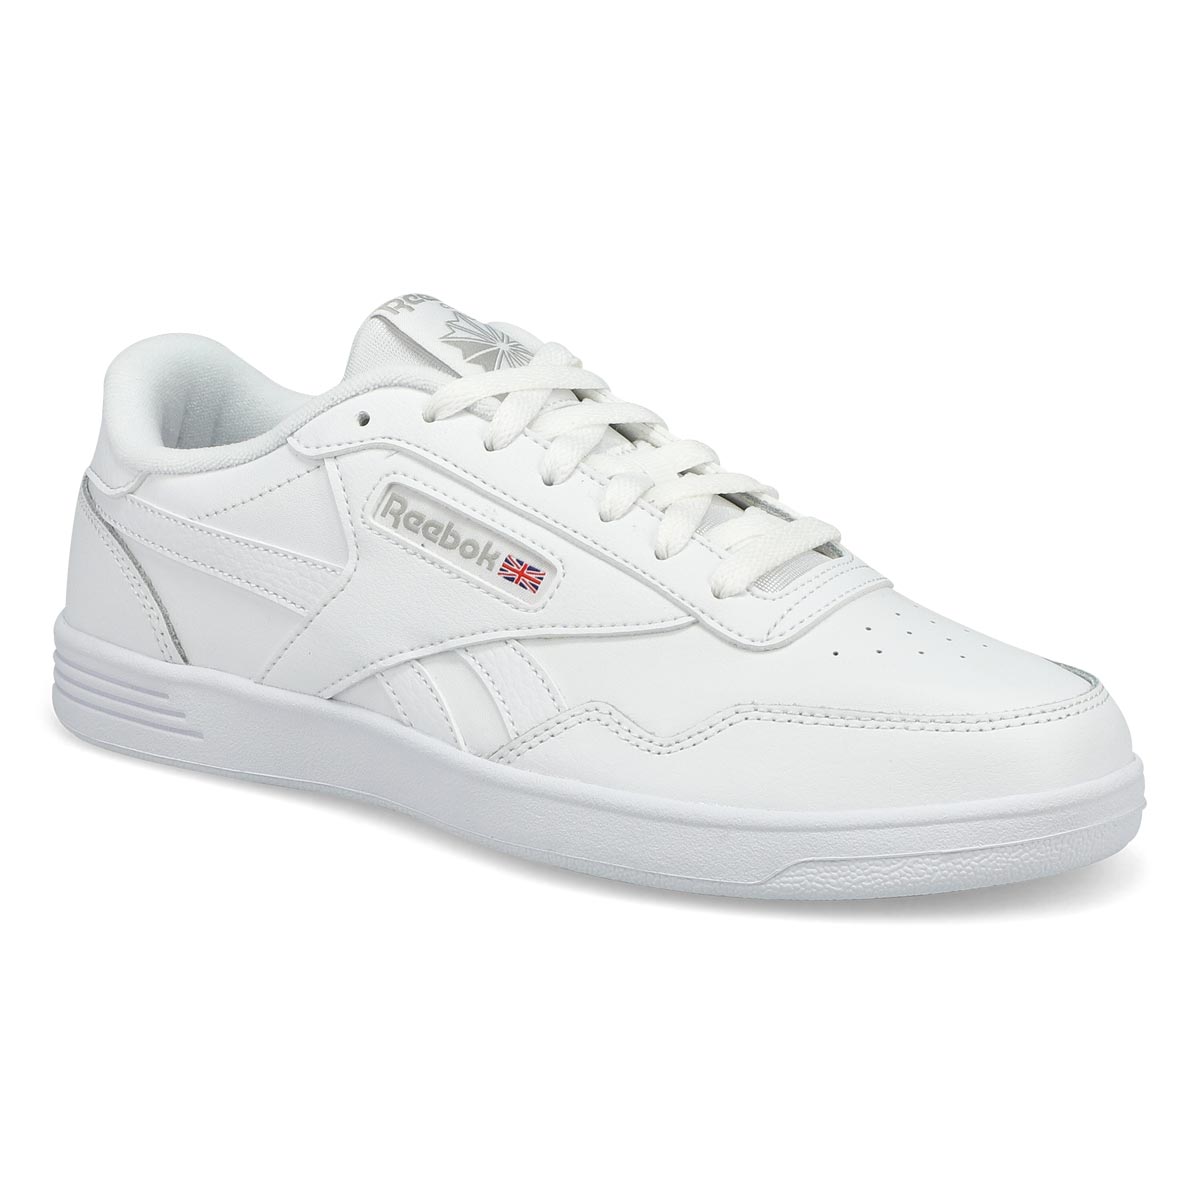 Reebok Men's Club Memt Sneaker - White/Steel 